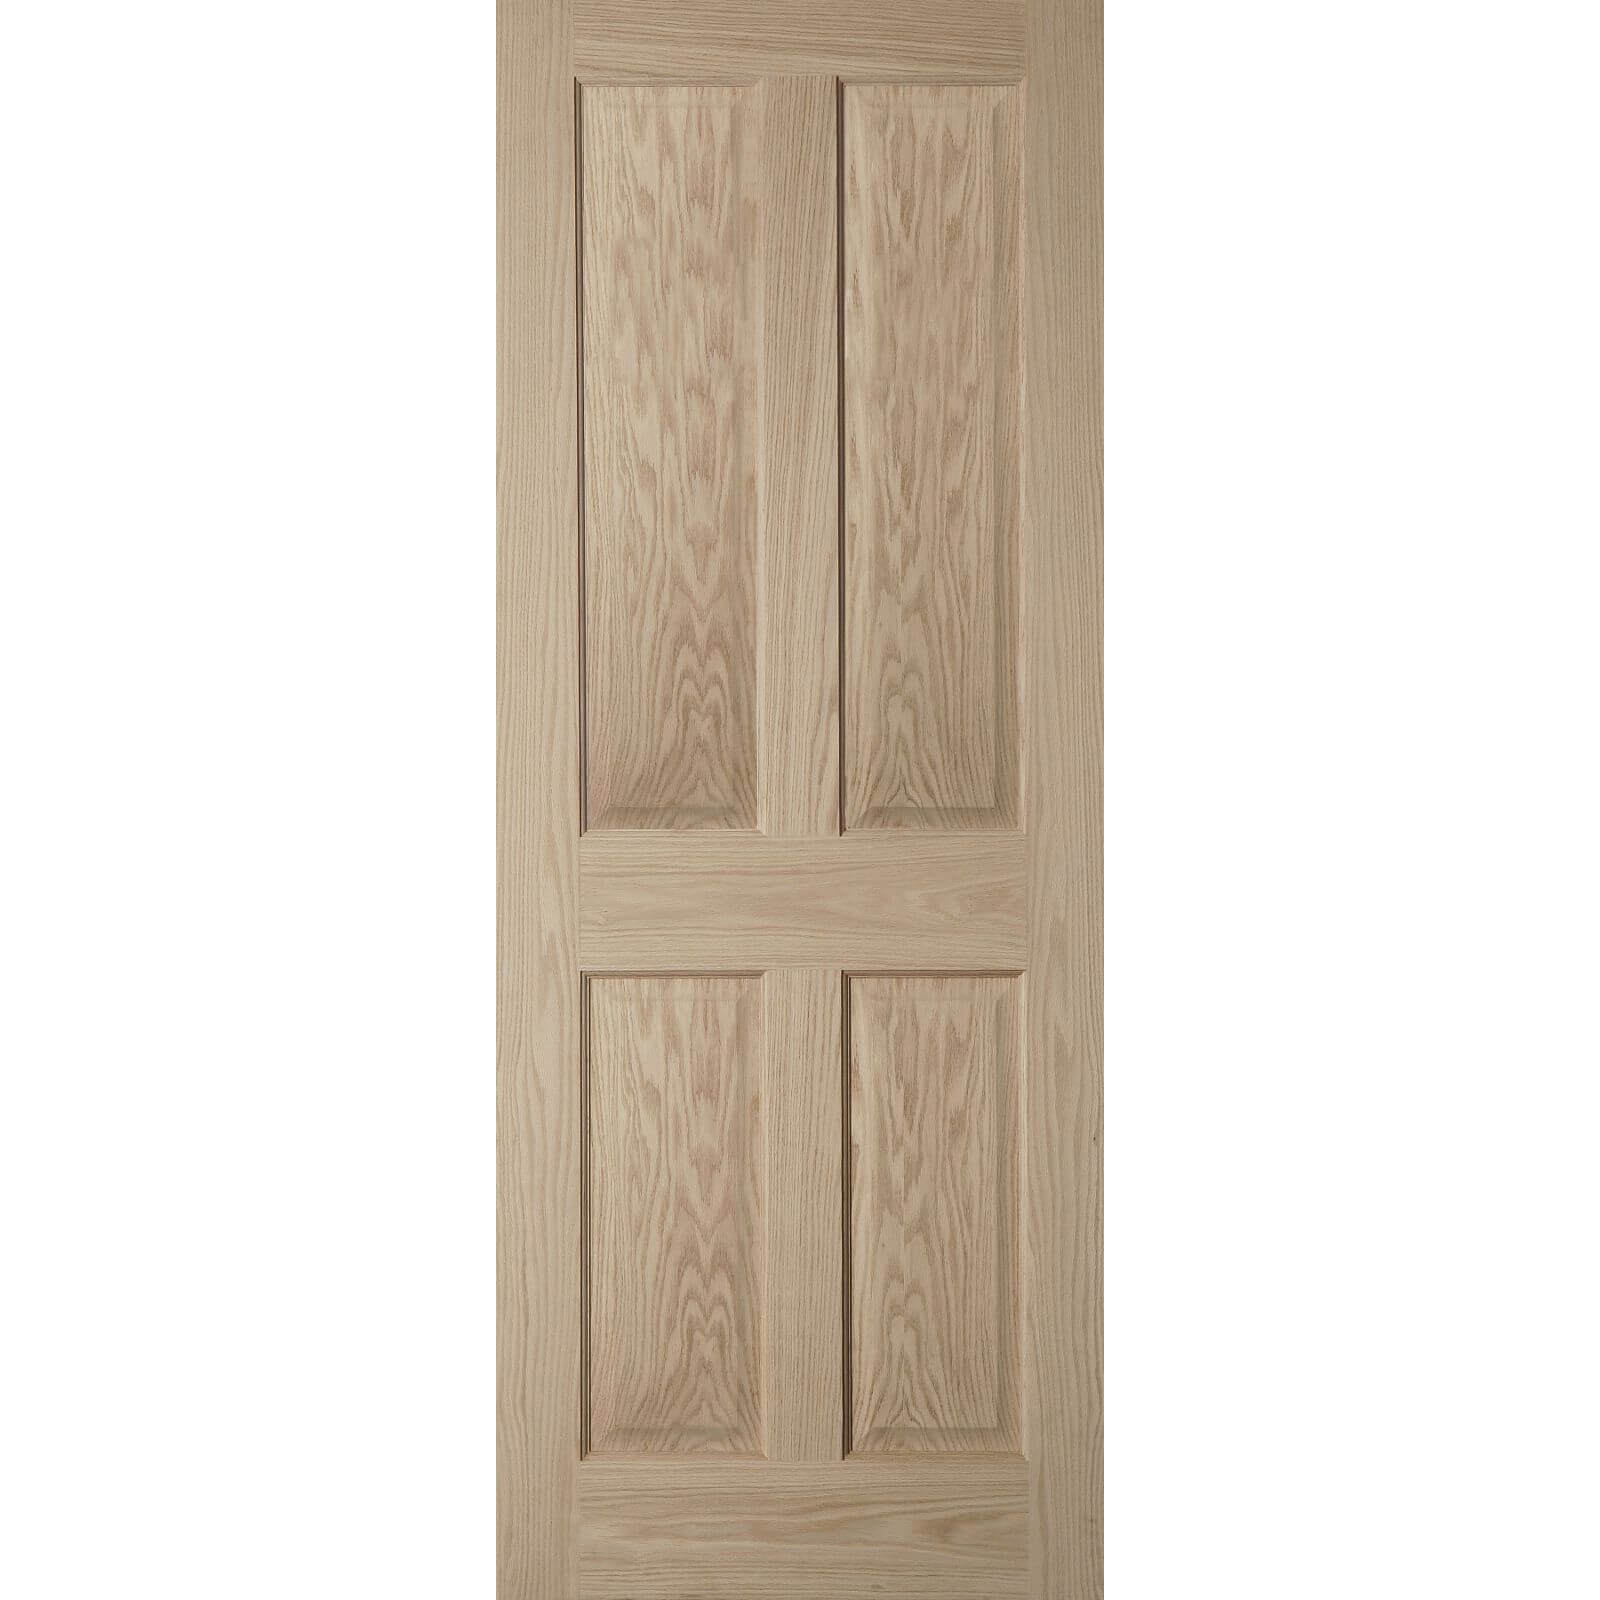 4 Panel Oak Veneer Internal Fire Door - 686mm Wide